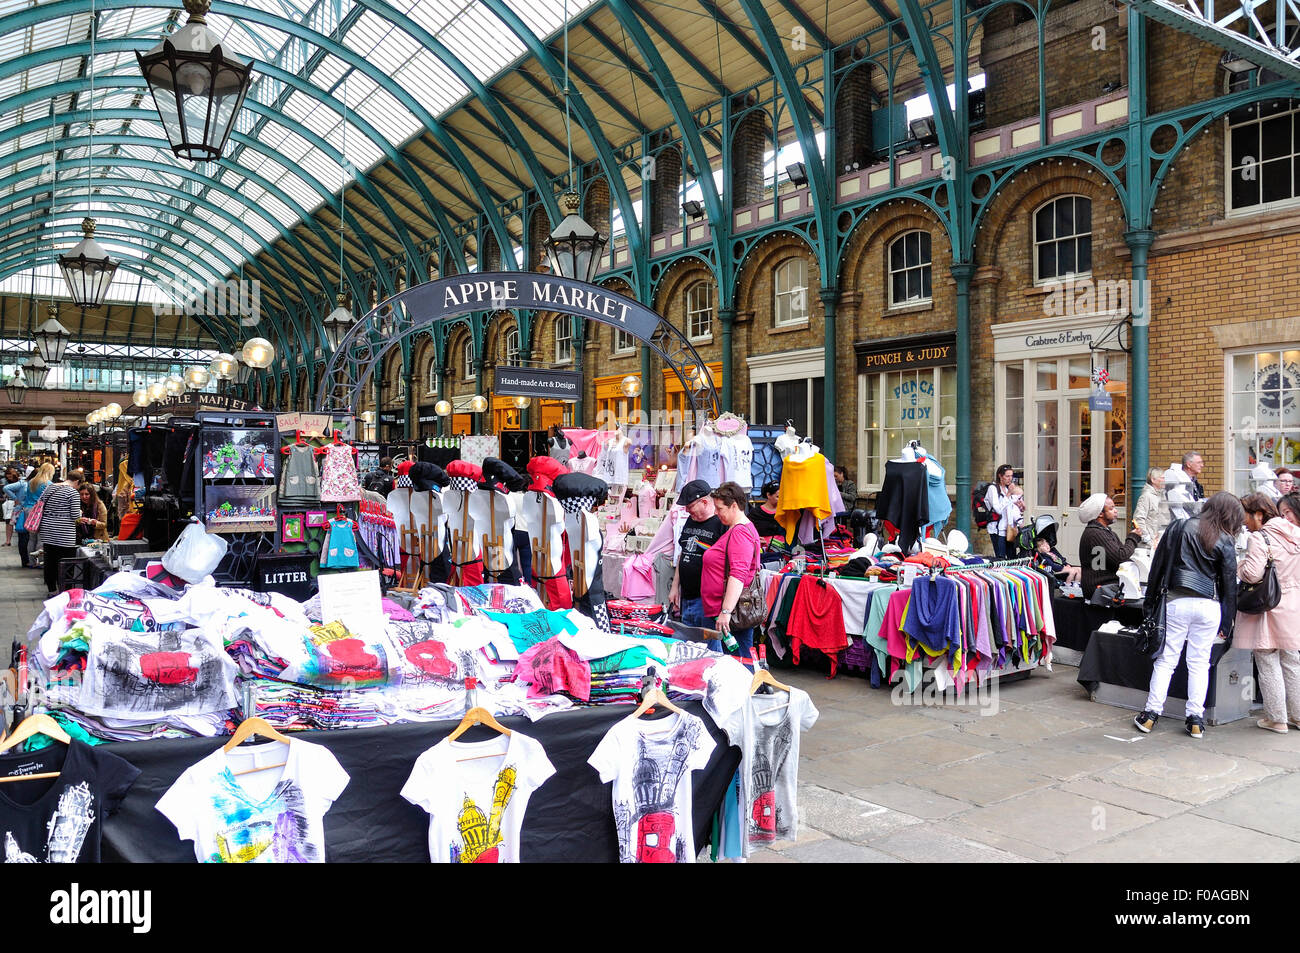 Mercato di Apple nel mercato di Covent Garden, Covent Garden, la City of Westminster, Londra, Inghilterra, Regno Unito Foto Stock